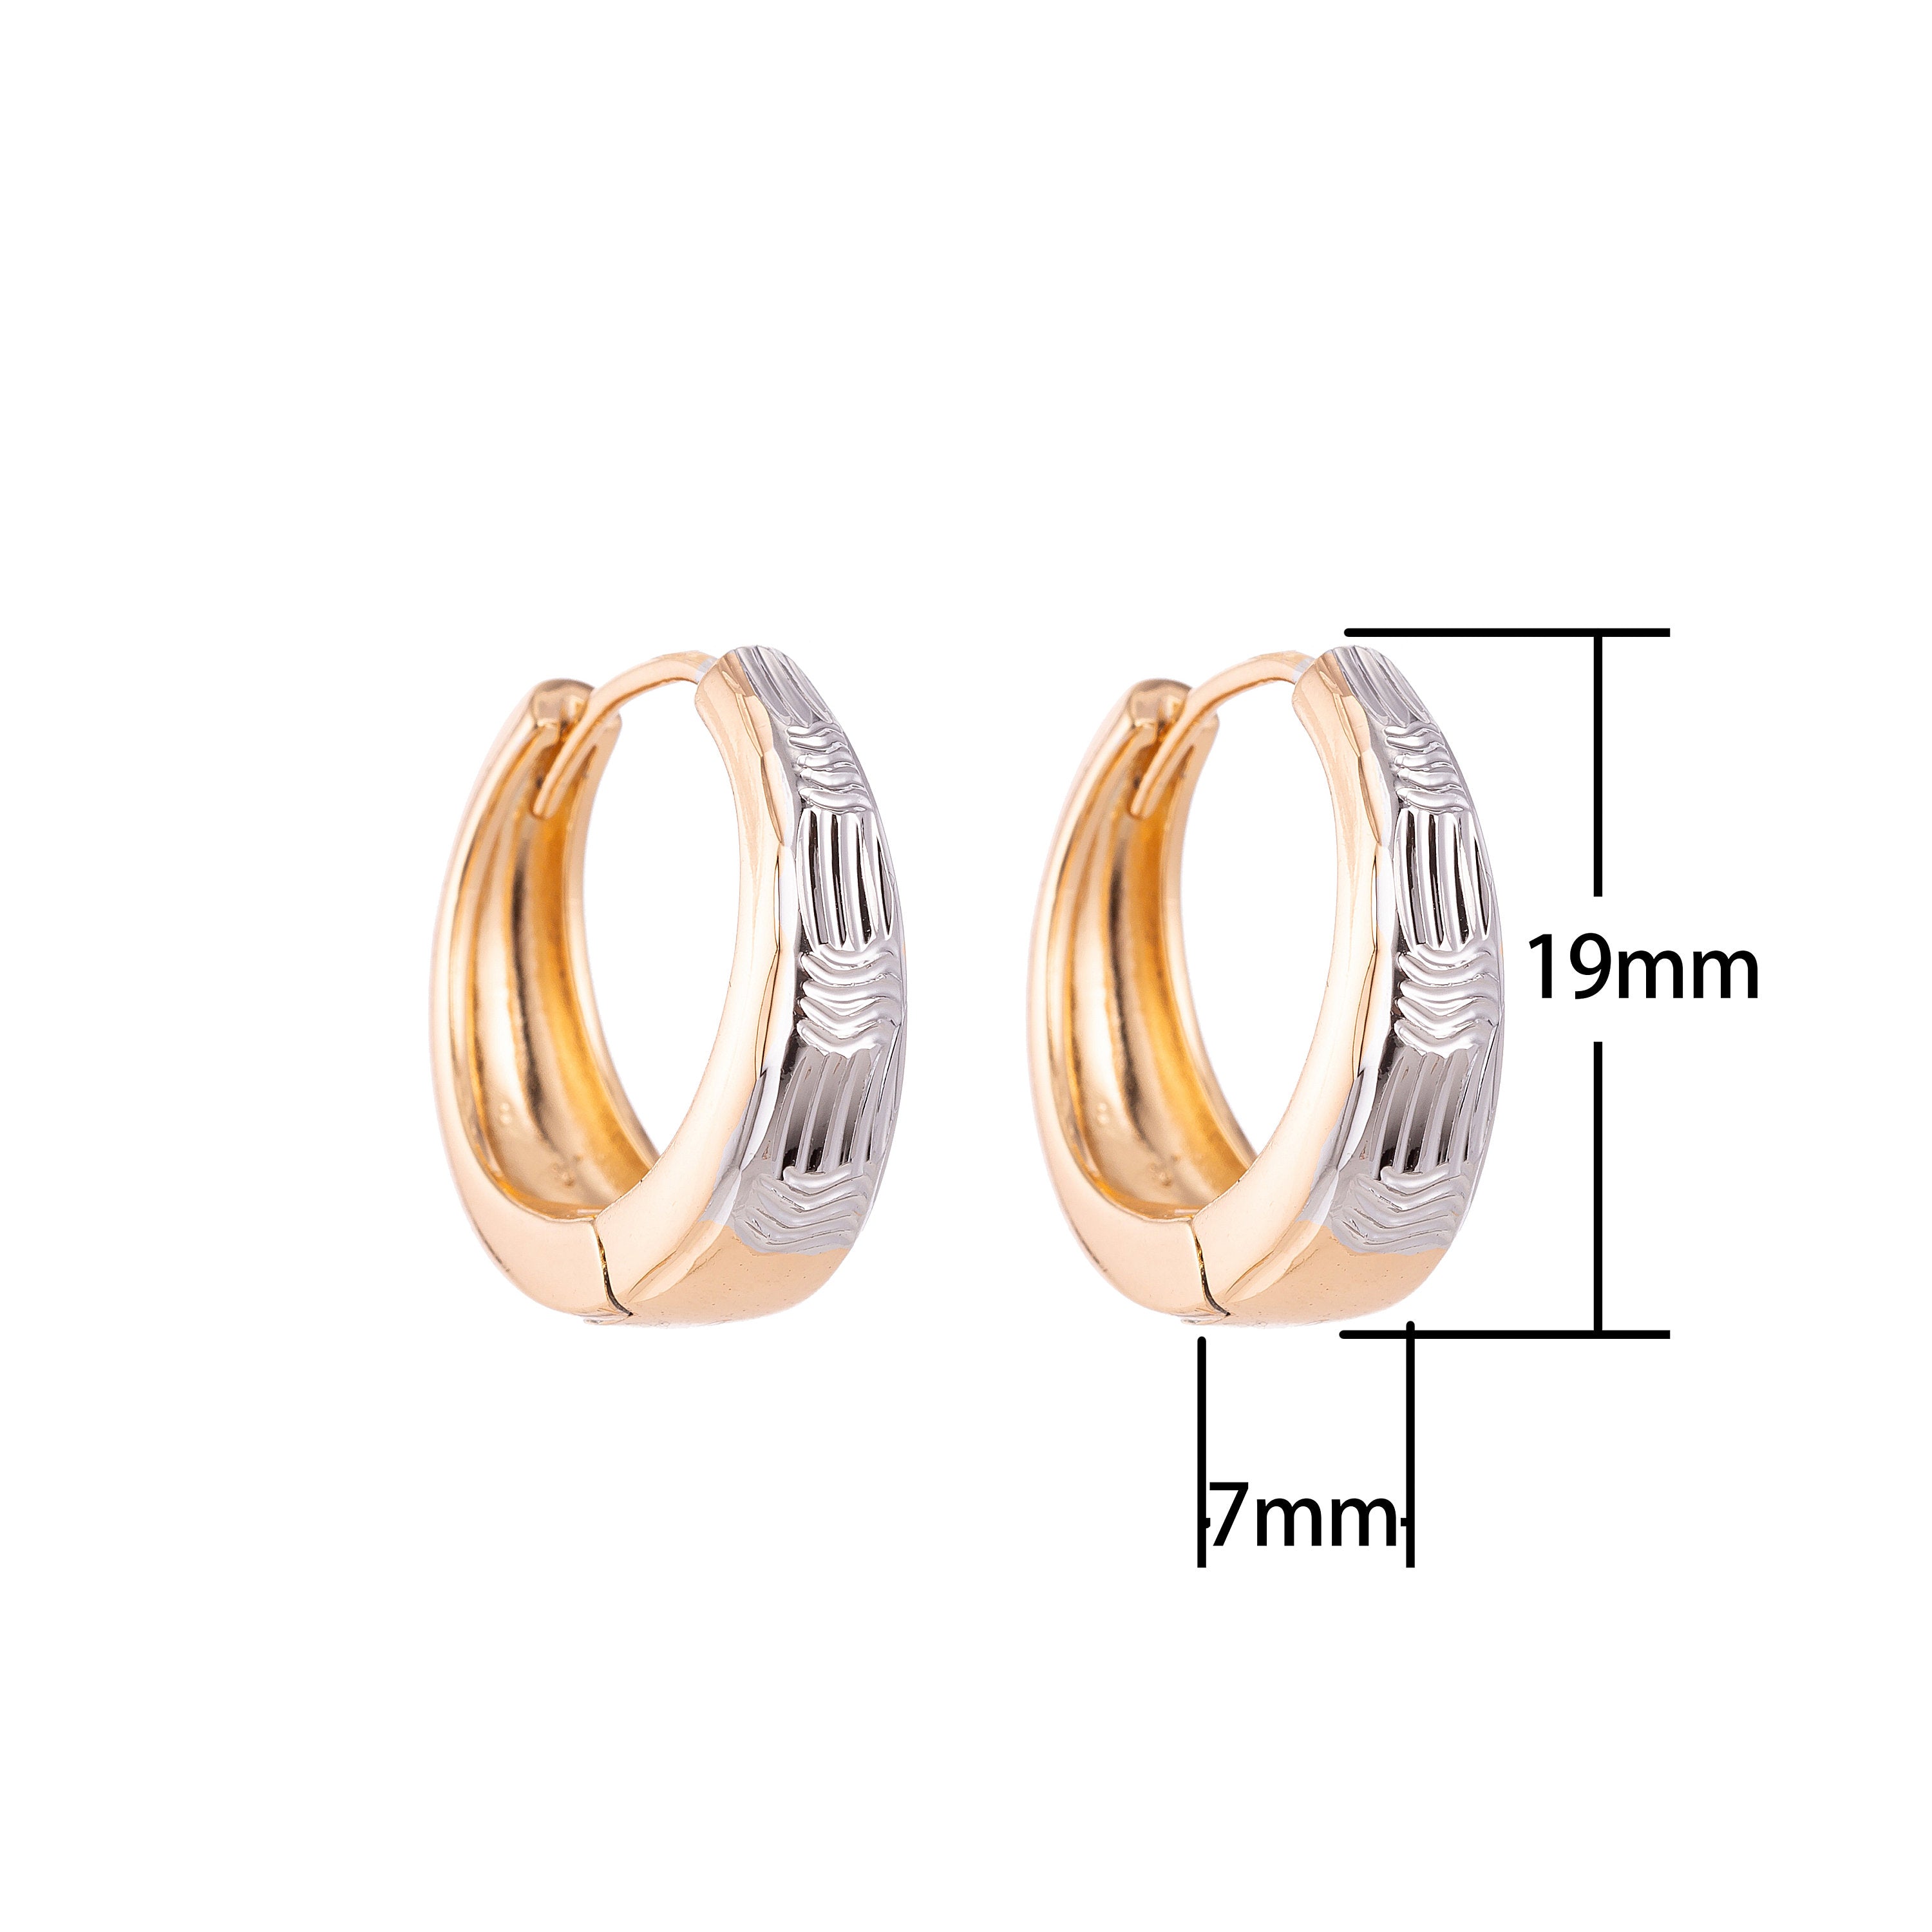 Gold Silver Streaks Patterned Small Huggies Earring Gold Jewelry Patterned Earrings Lightweight Jewelry - DLUXCA